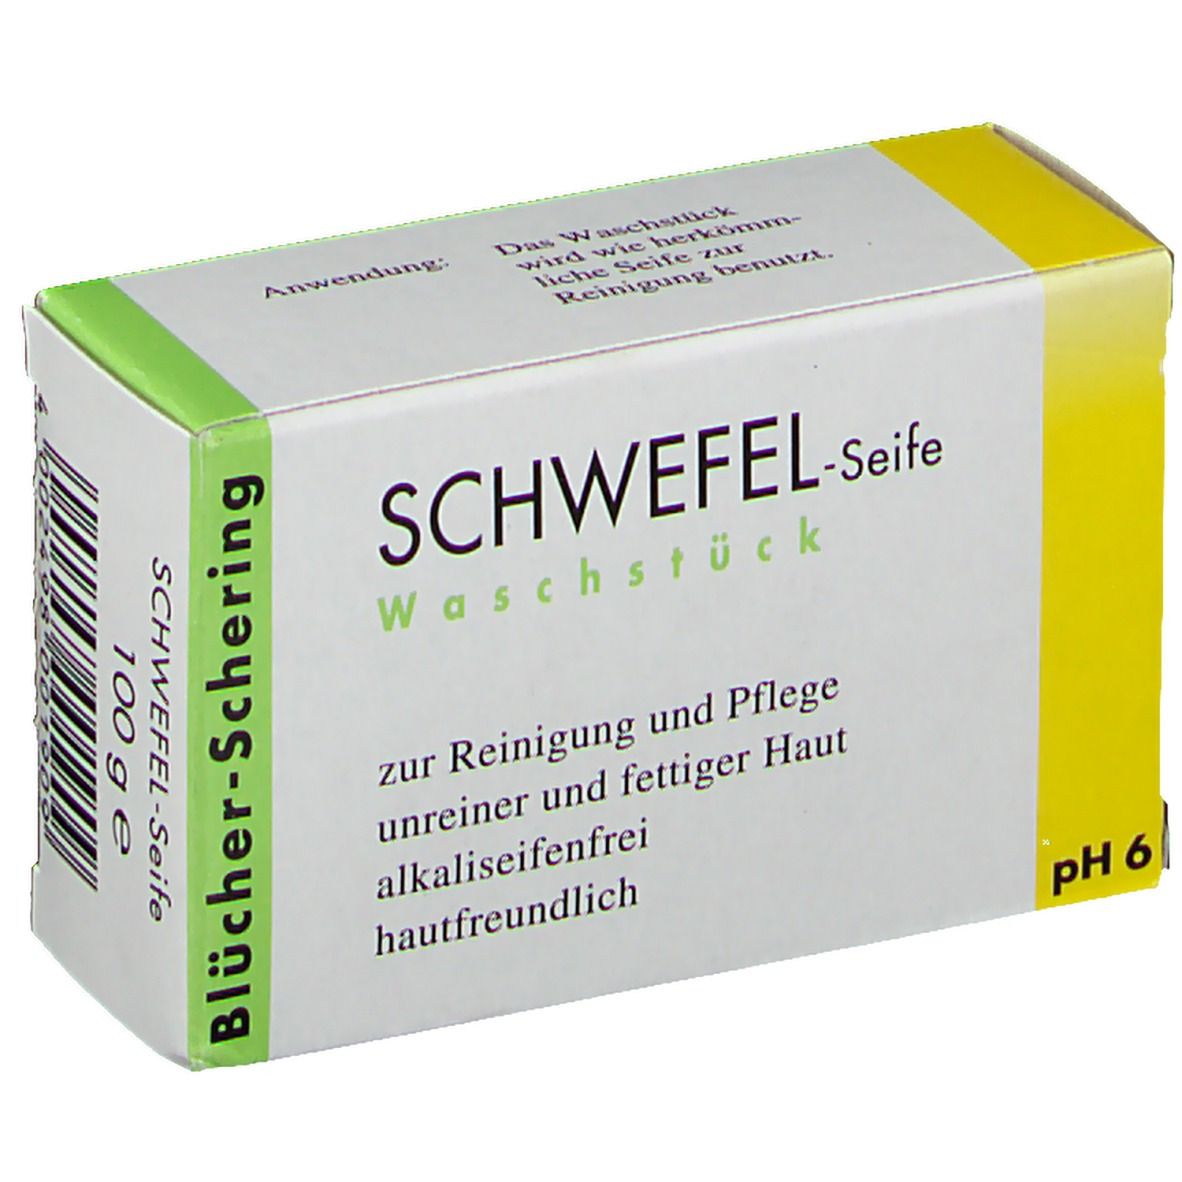 Image of Schwefel Seife